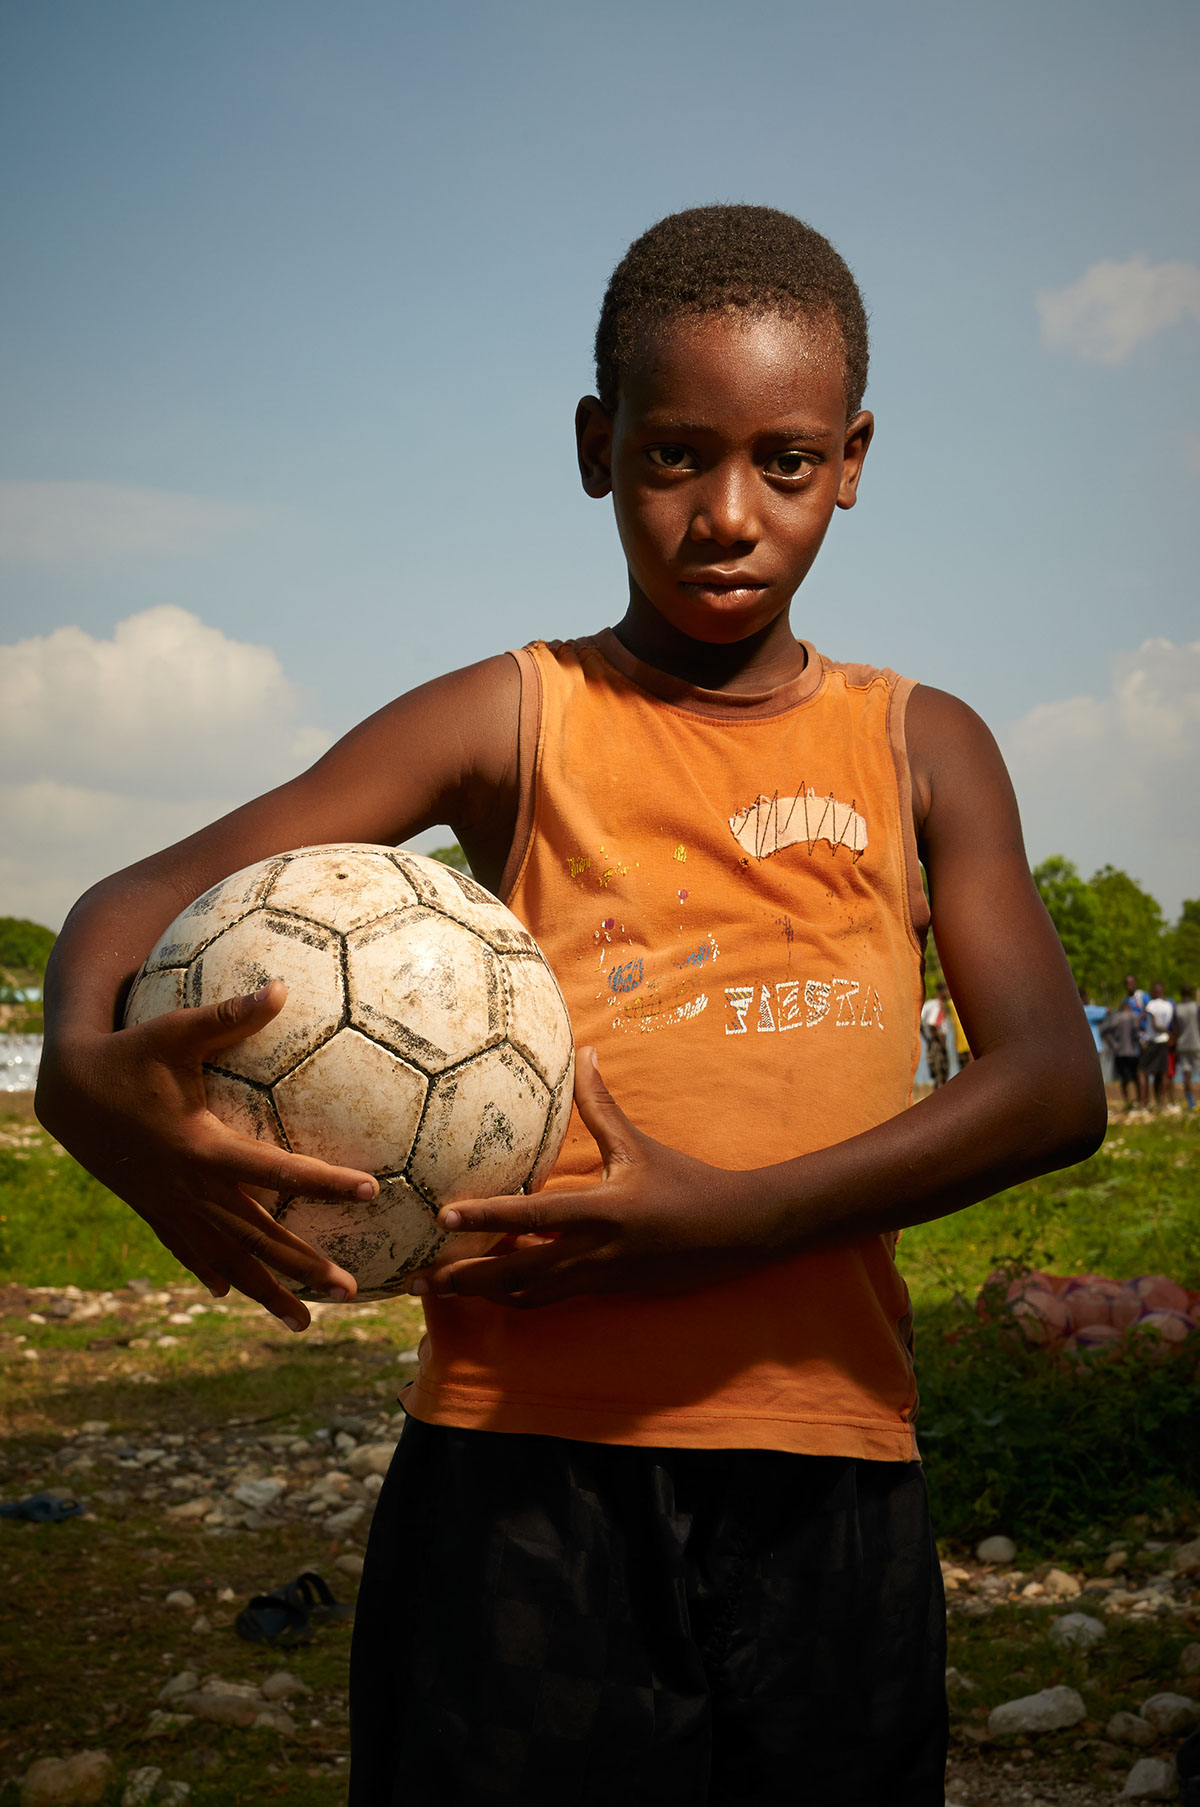 Haiti soccer jacmel portrait sports people portrait photography Haitian children